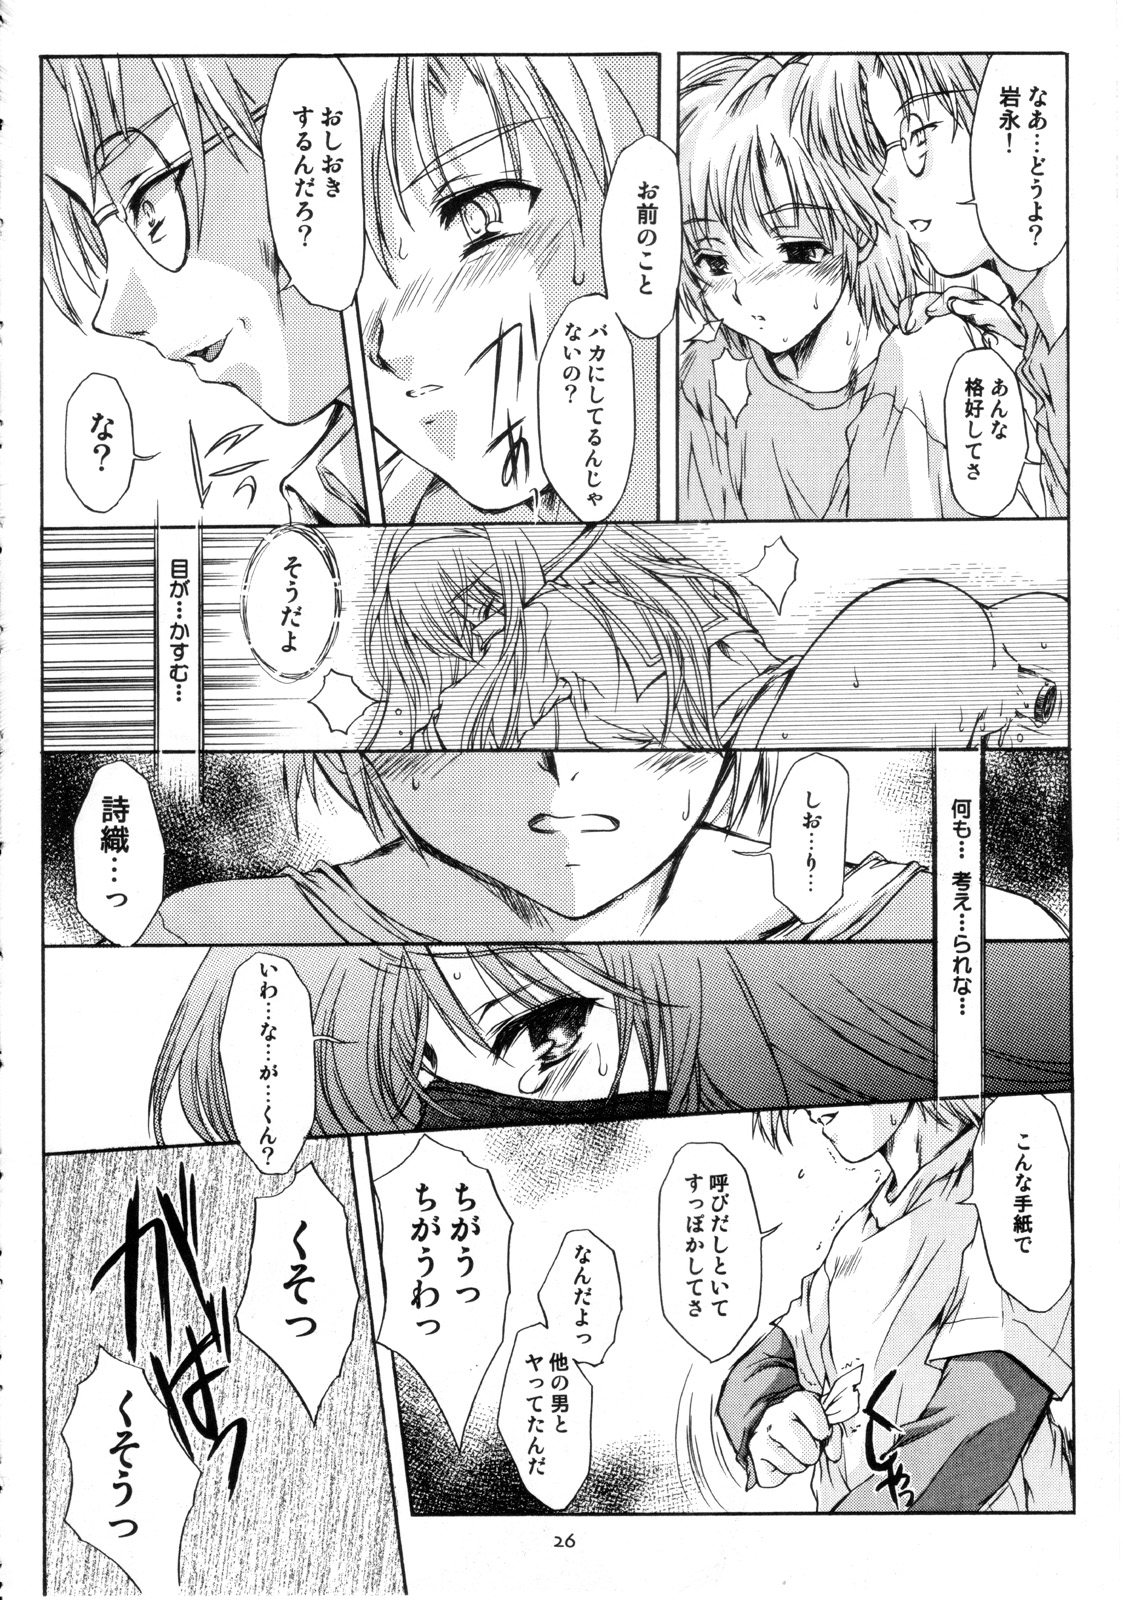 [HIGH RISK REVOLUTION] Shiori Vol.12 Haitoku no Cinderella (Tokimeki Memorial) page 27 full